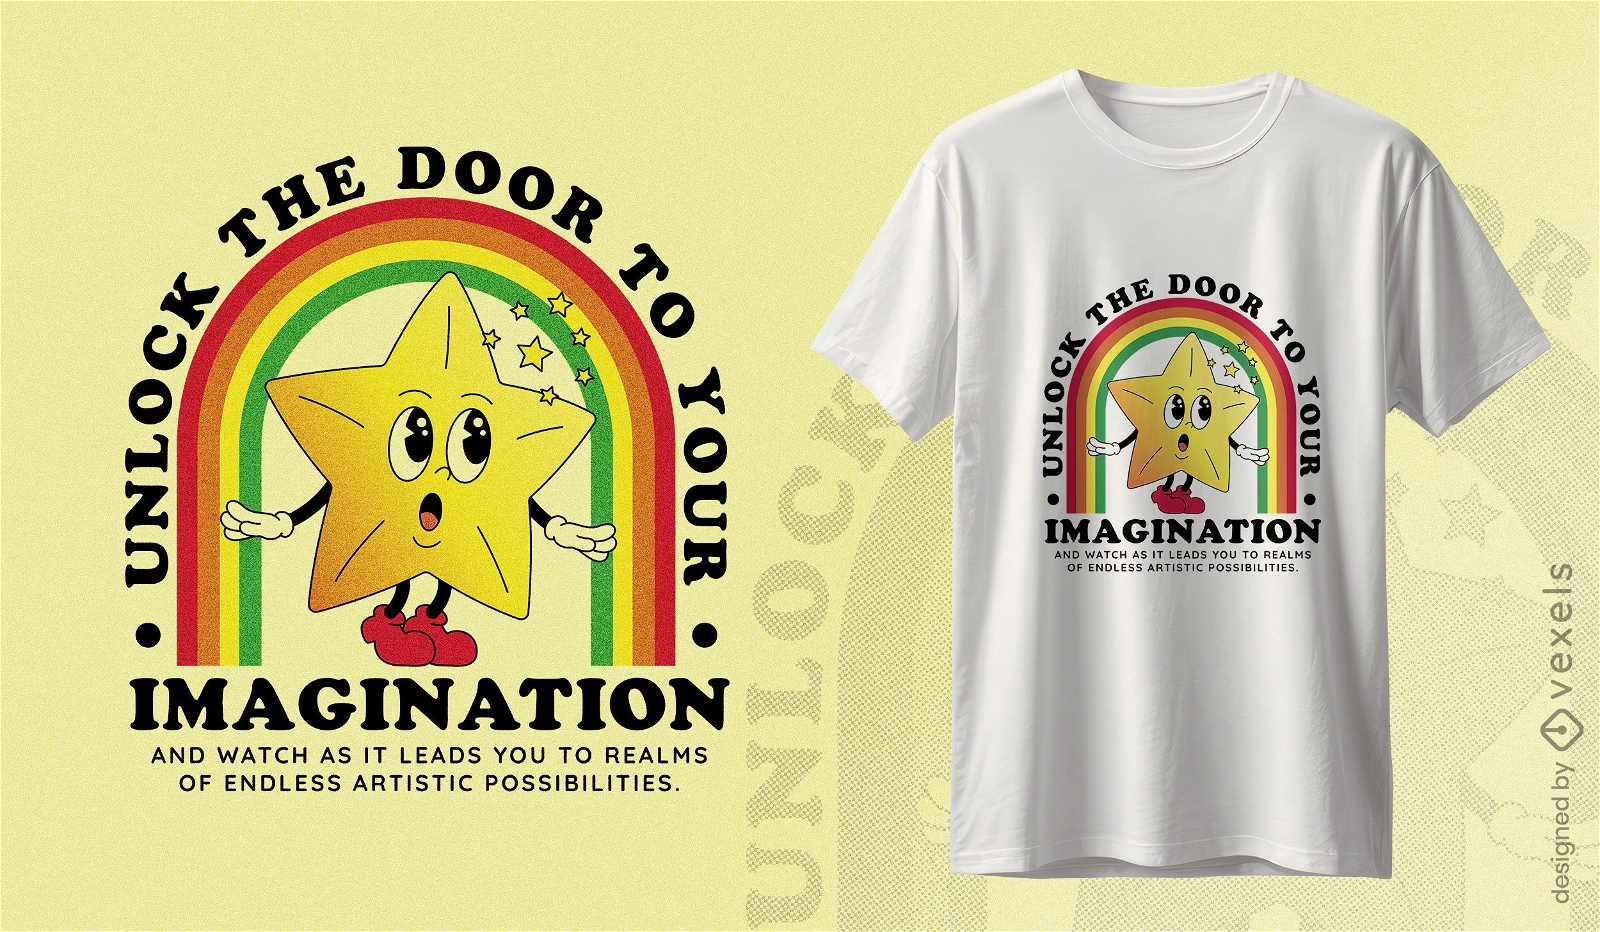 Diseño de camiseta estrella de la puerta de la imaginación.